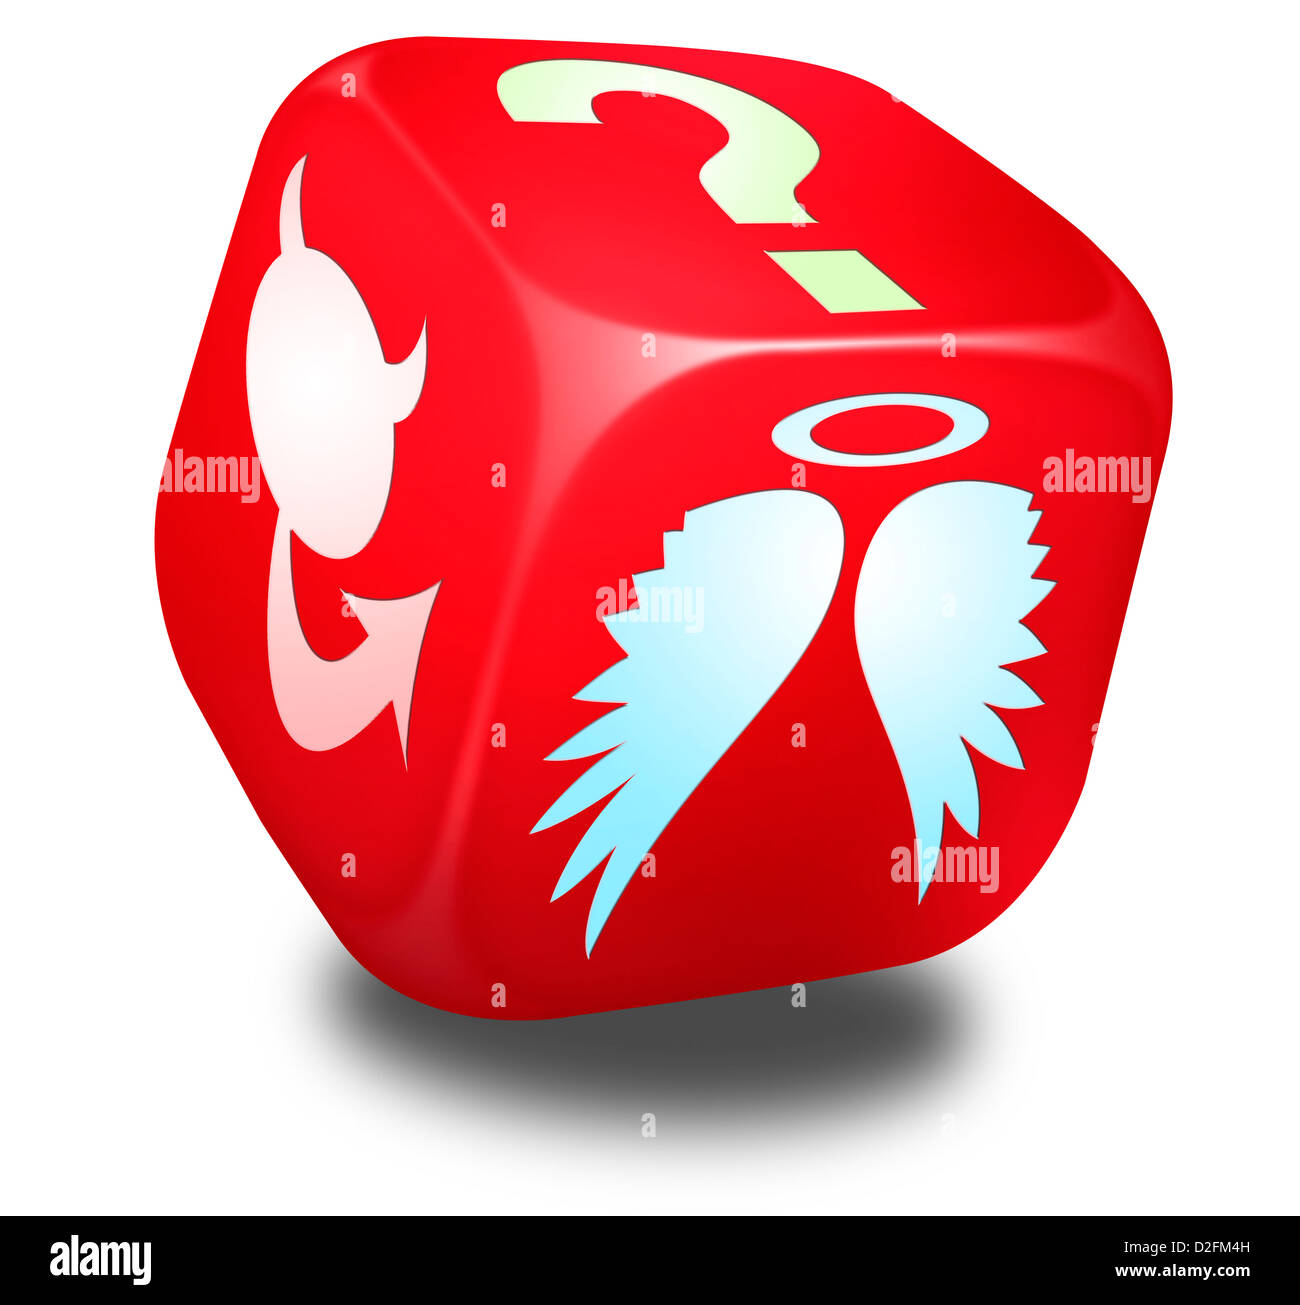 Dés rouge avec des symboles représentant l'Ange et le diable, et un point d'interrogation sur les côtés - concept de choix Banque D'Images